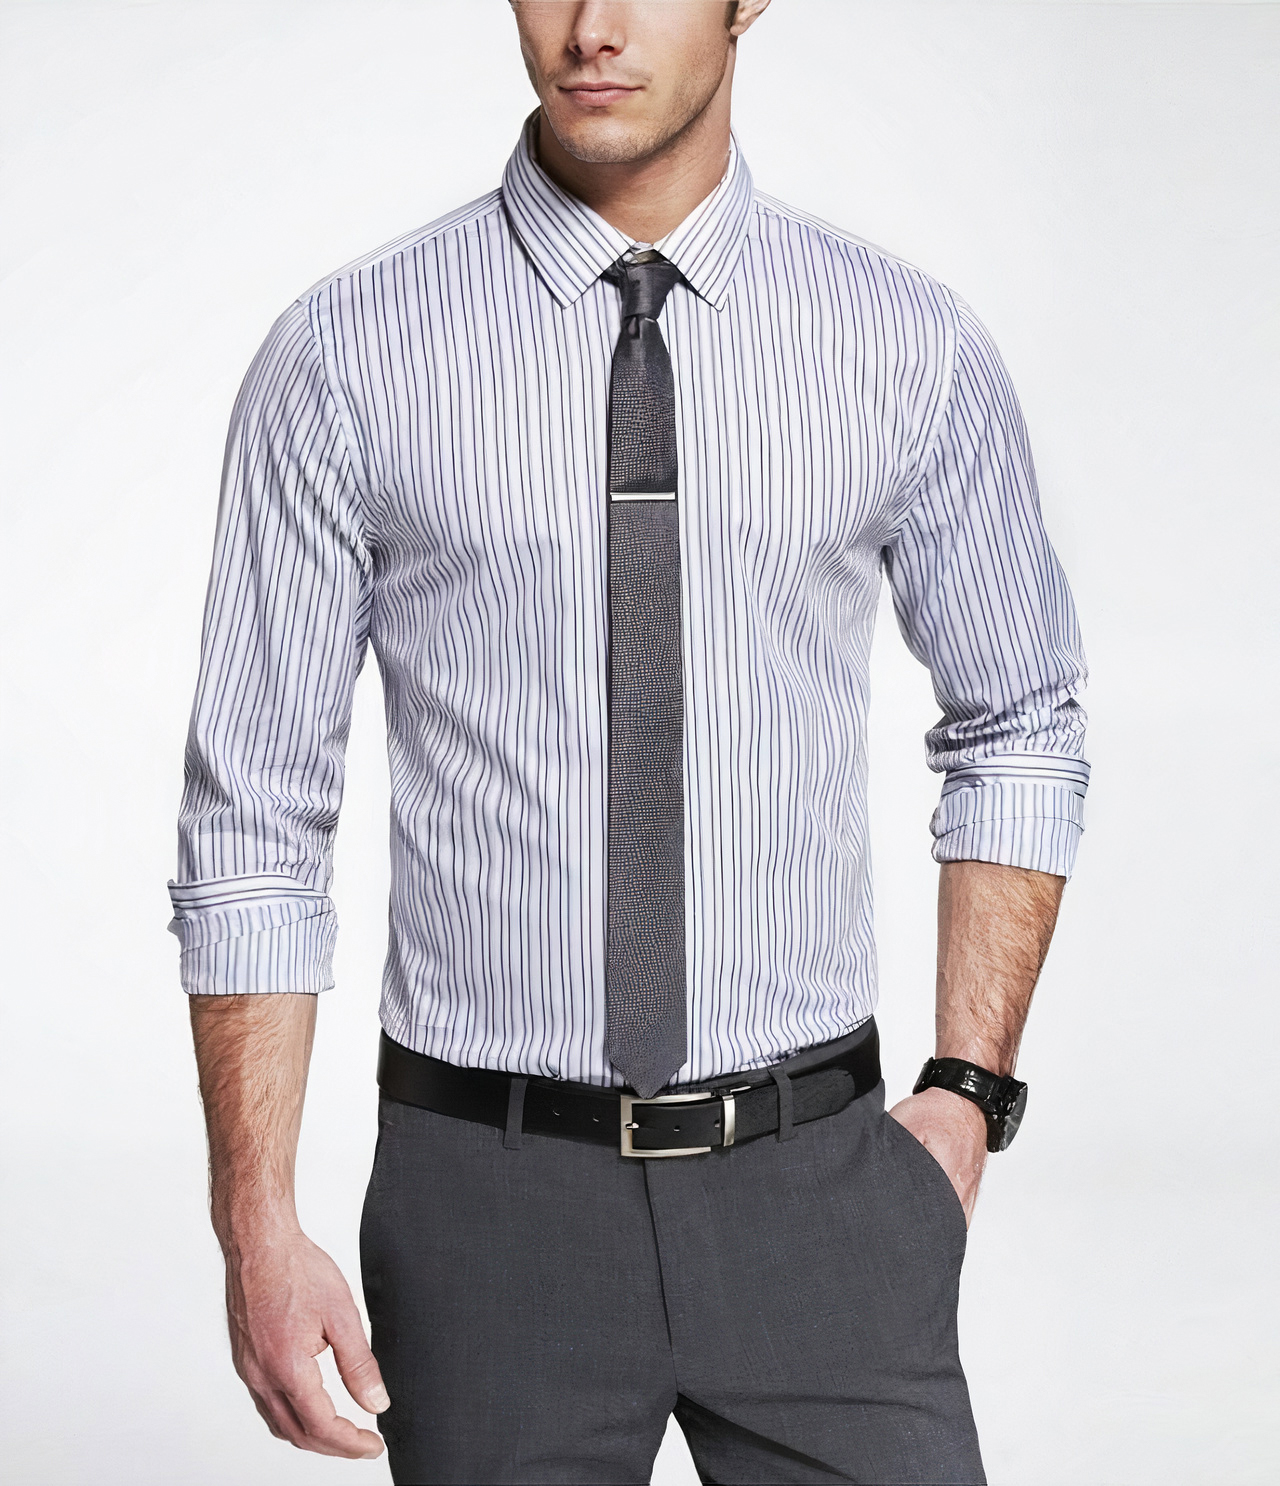 light grey shirt and dark grey tie color combination